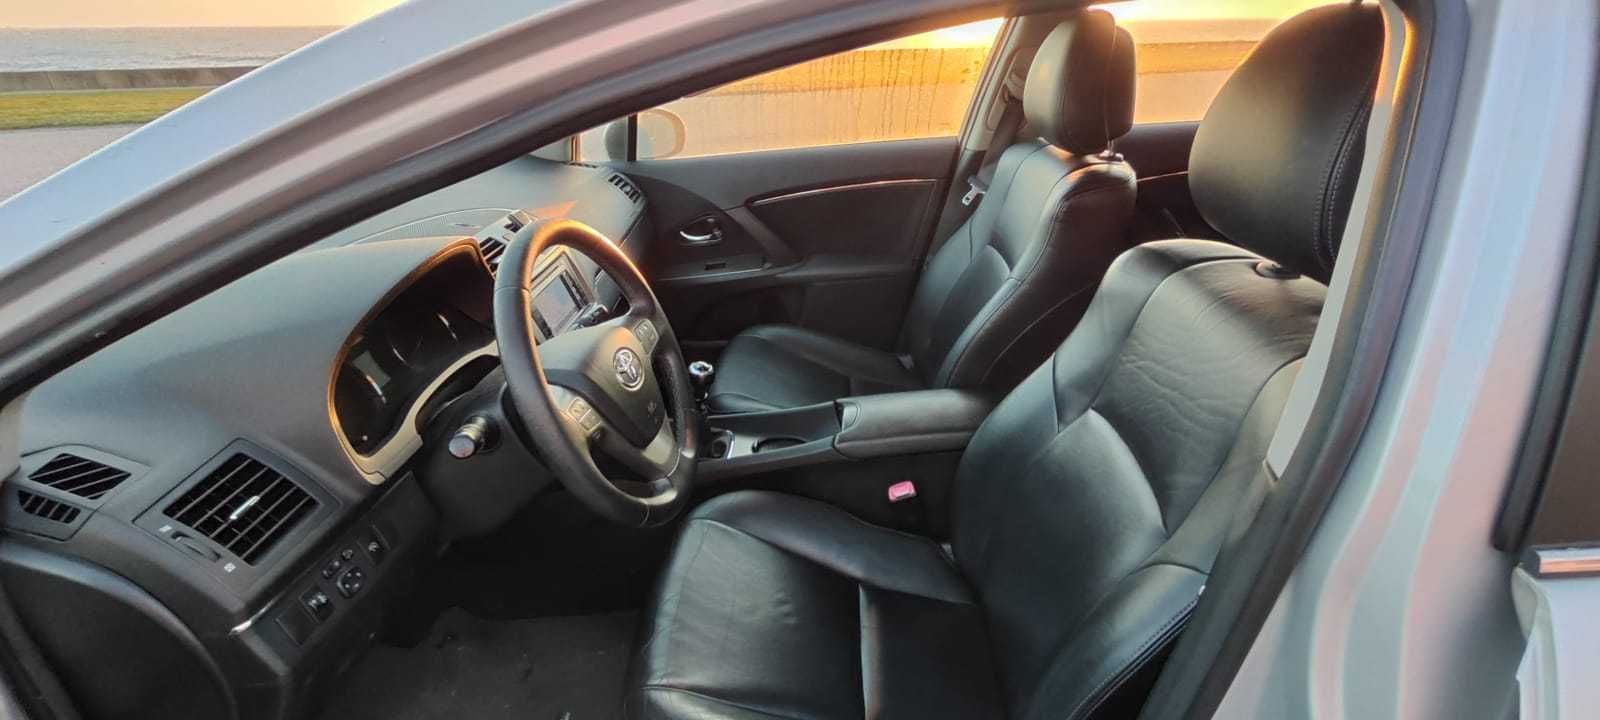 Toyota Avensis 2.0 D4D (126CV) - Exclusive + Estofos em Pele + GPS